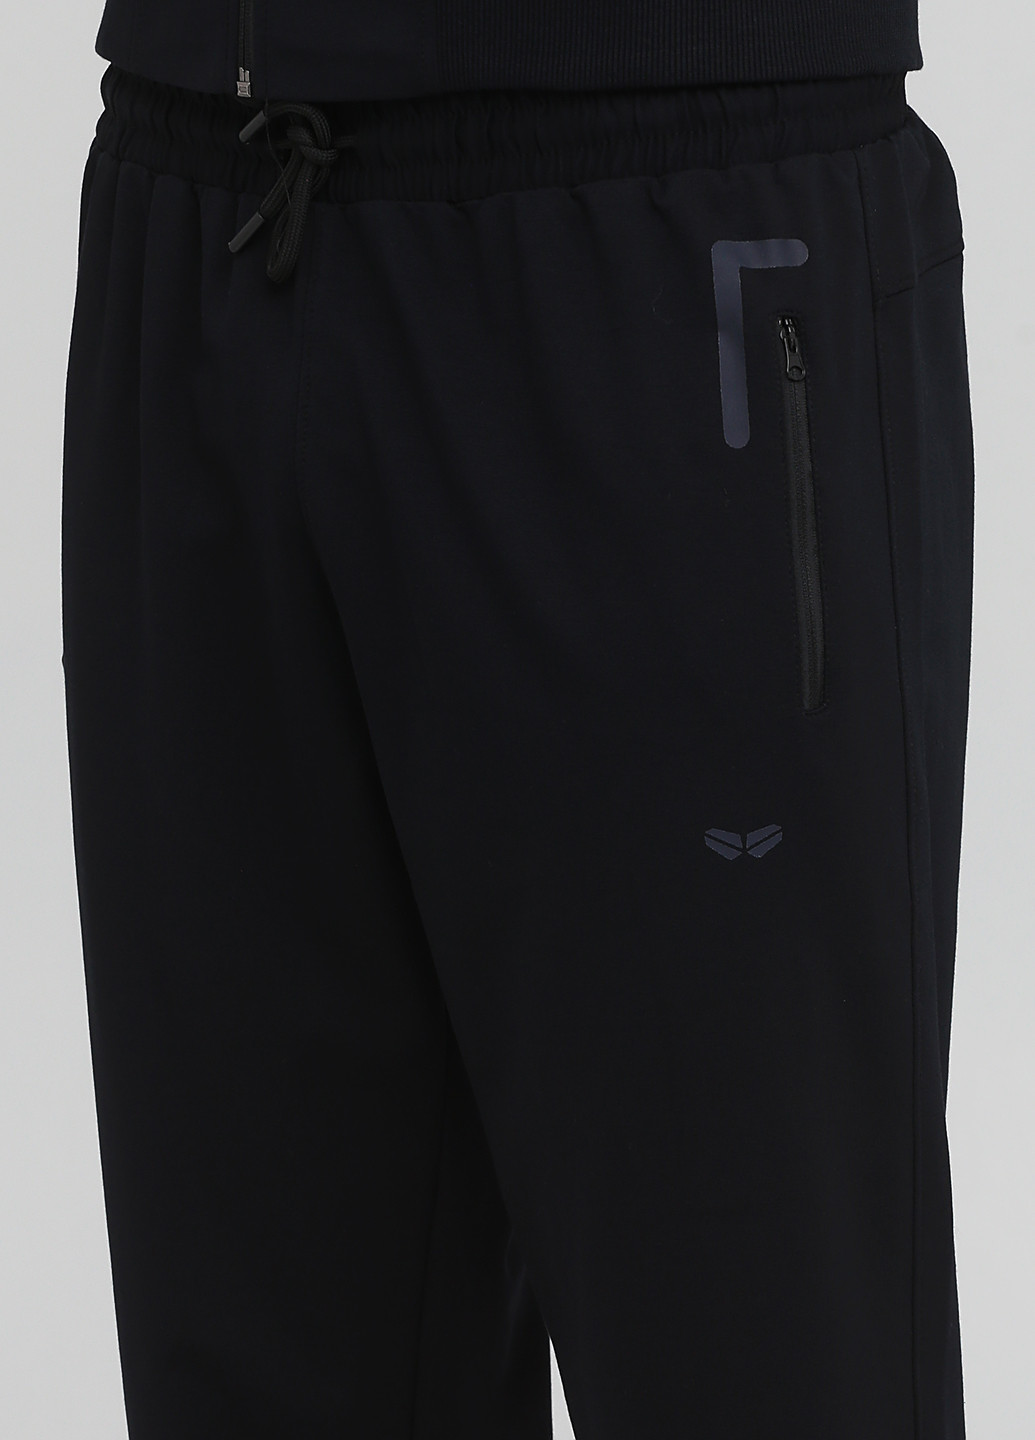 Черный демисезонный костюм (кофта, брюки) брючный DMR-X